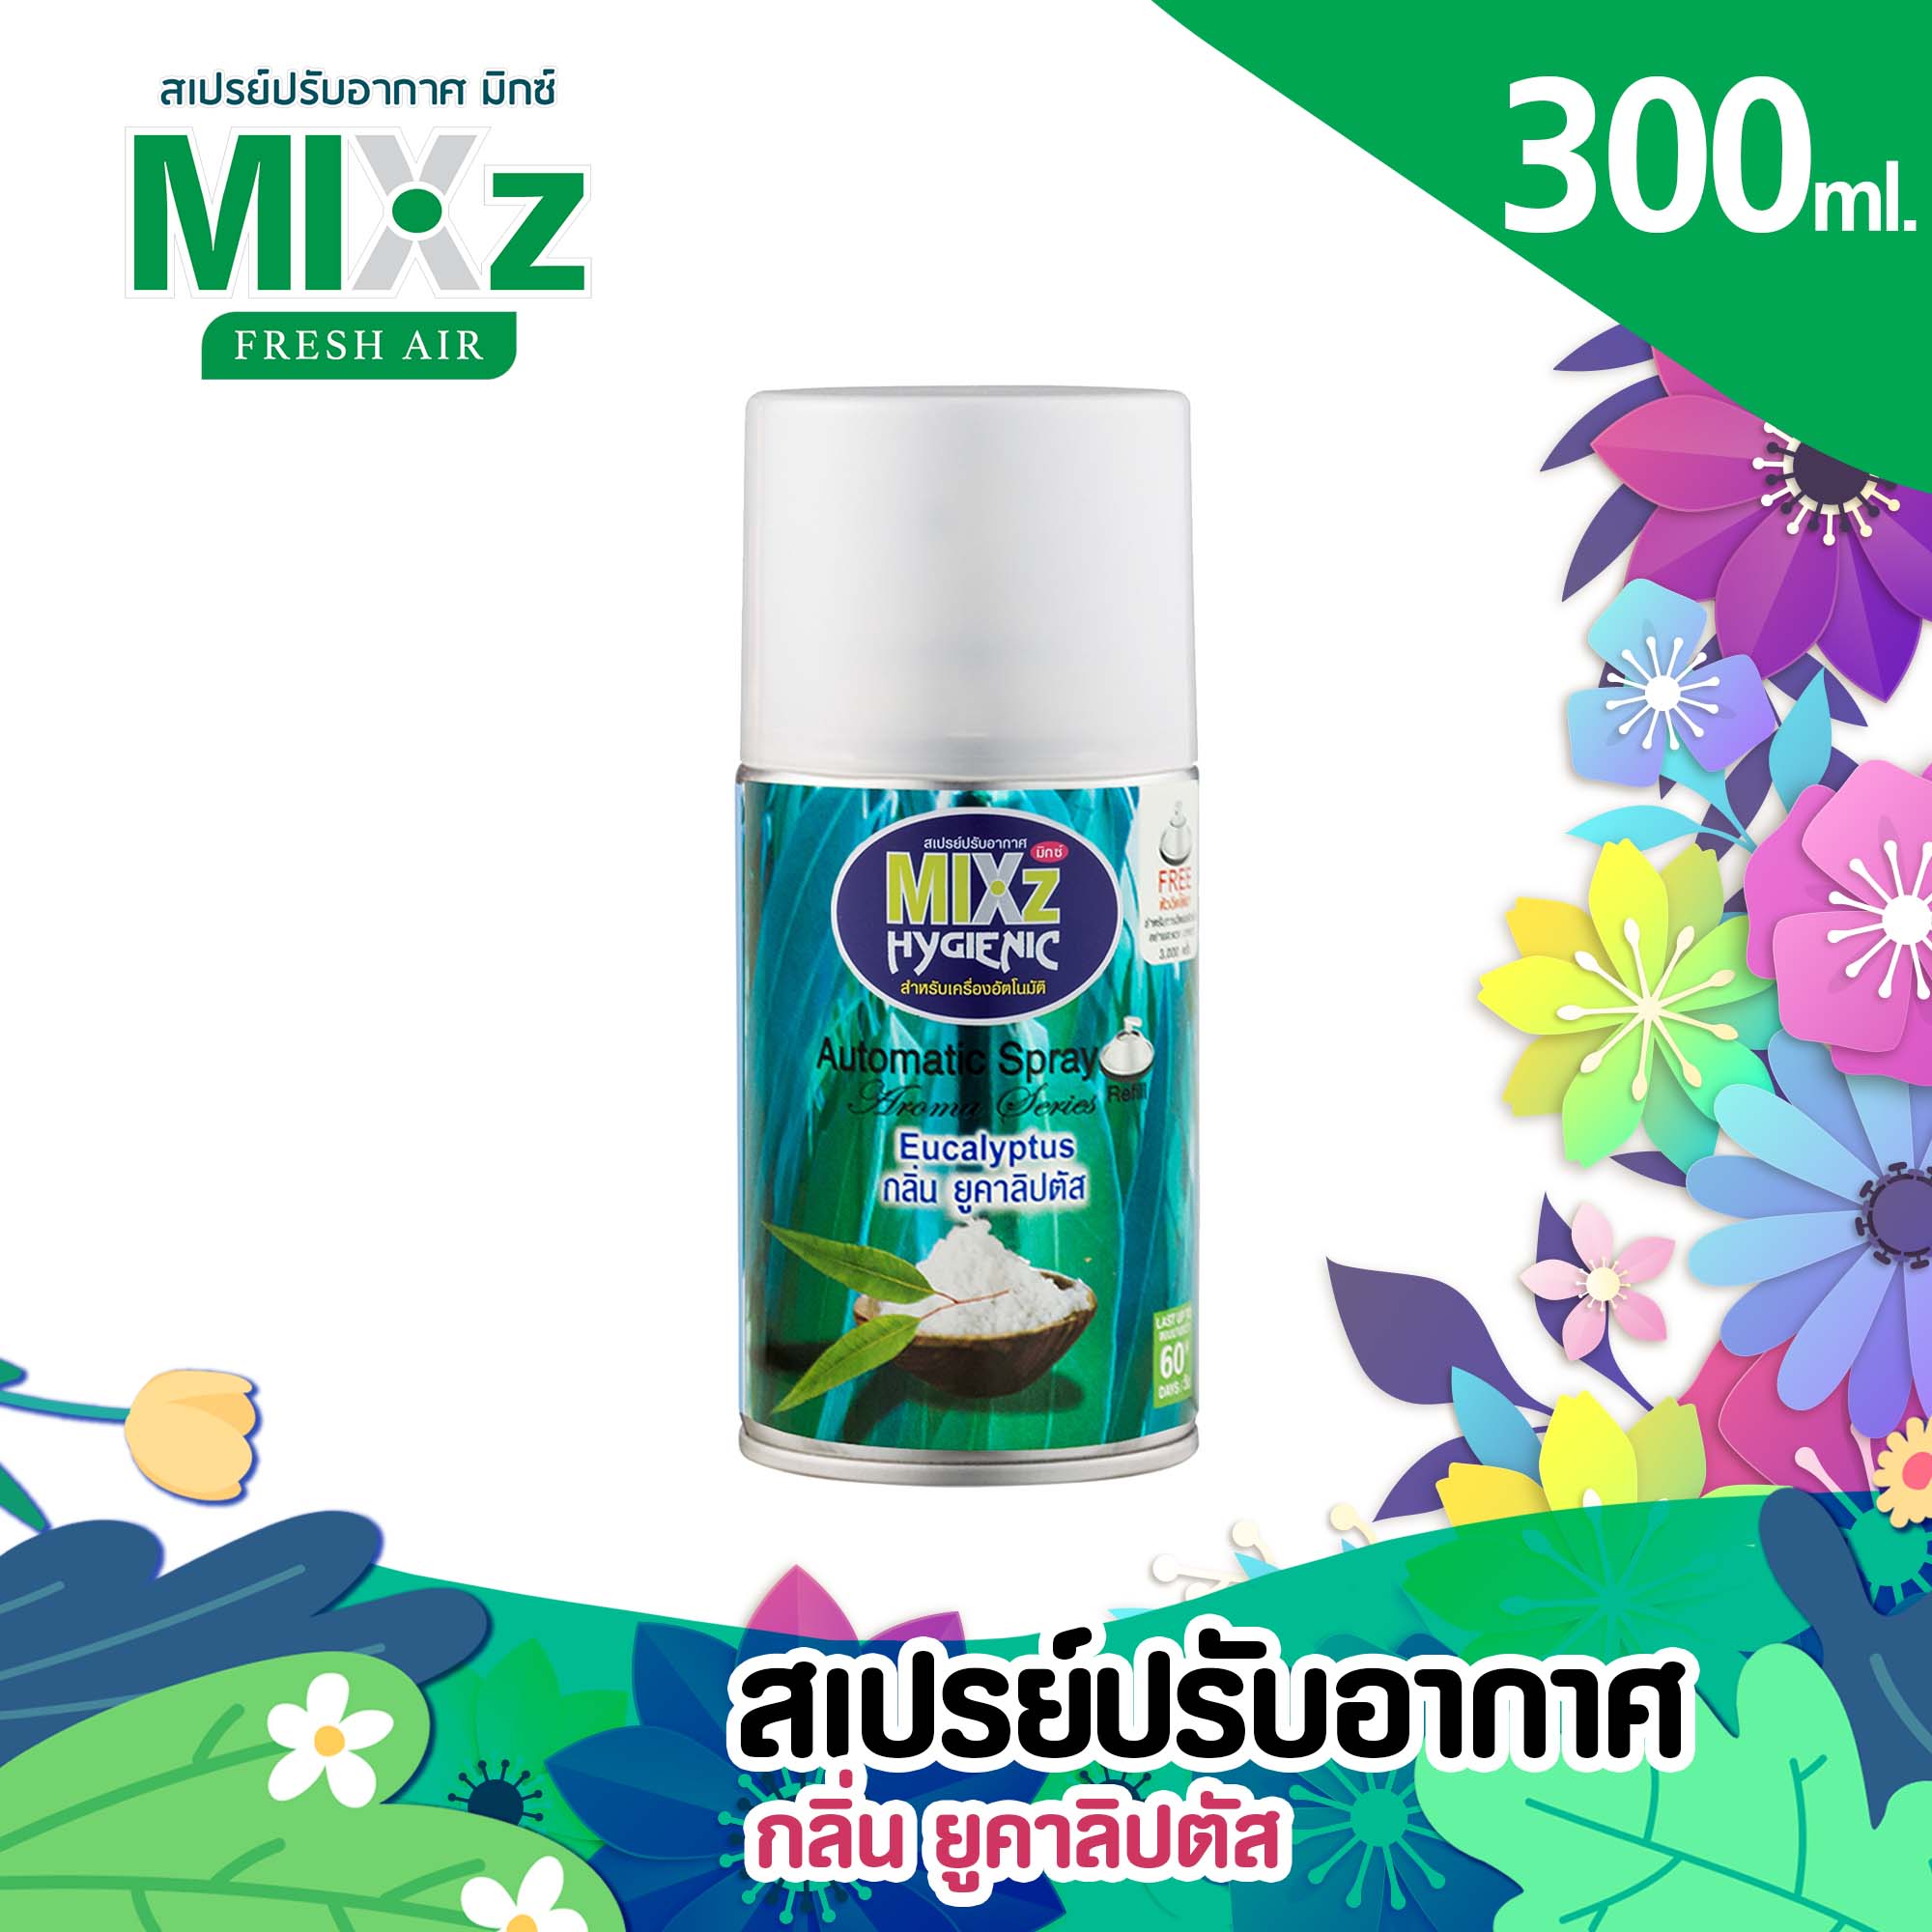 Mixz Hygienic Automatic รีฟิล สเปรย์ปรับอากาศ กลิ่นยูคาลิปตัส 300 ml.